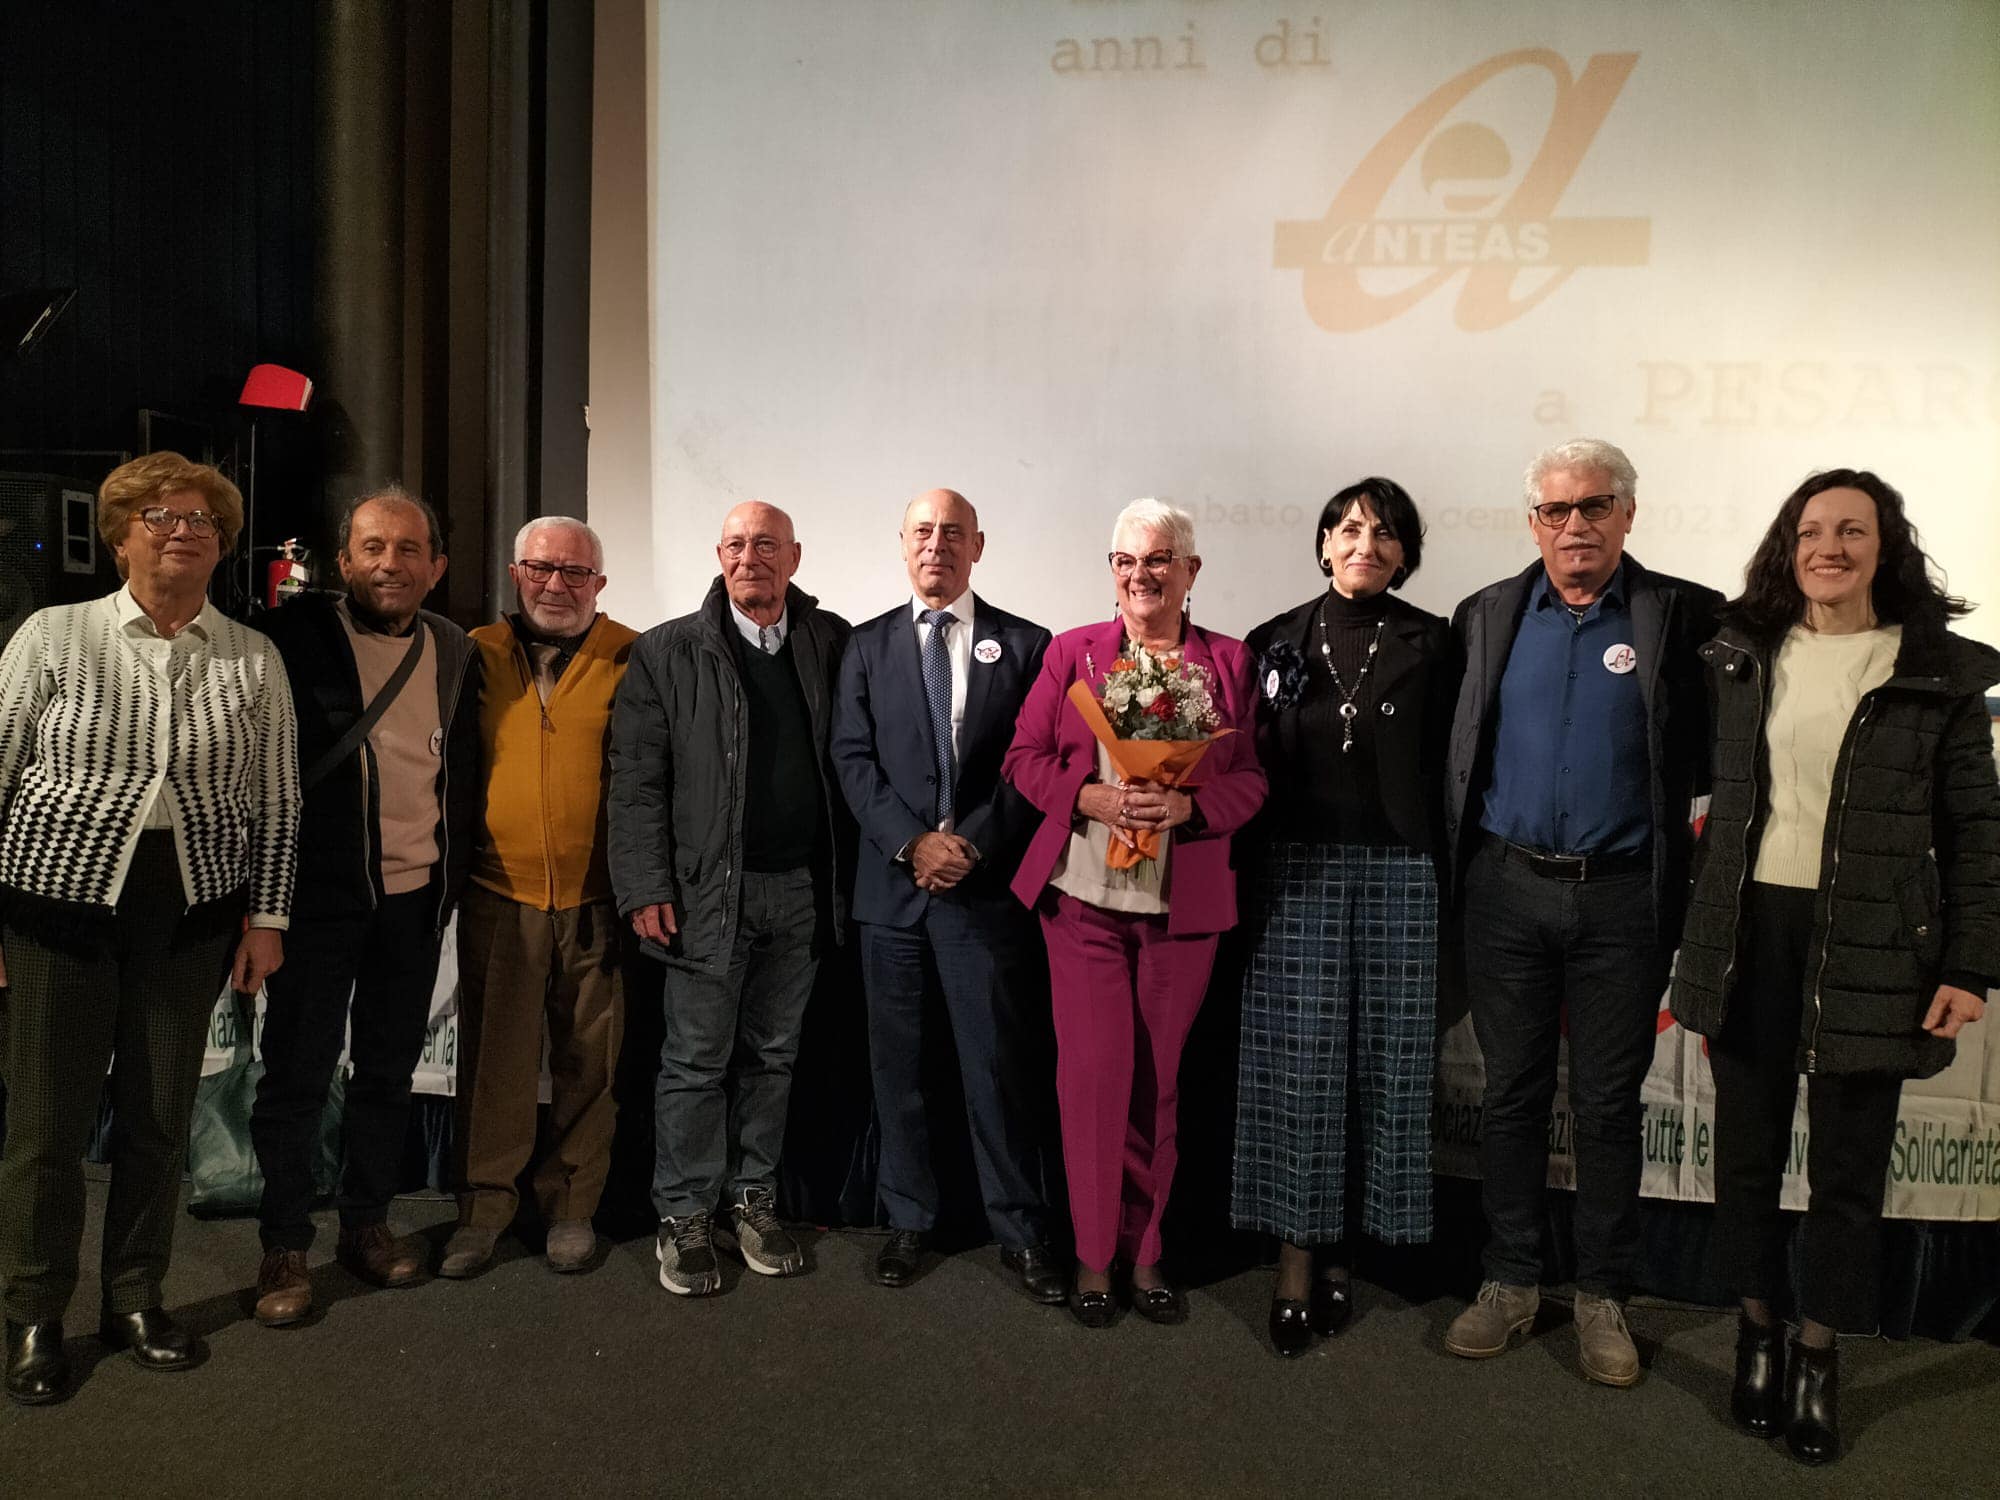 copertina dell'articolo: Anteas Lombardia a Pesaro per festeggiare il 25* anniversario di attività.   -  CLICCA PER CONTINUARE A LEGGERE